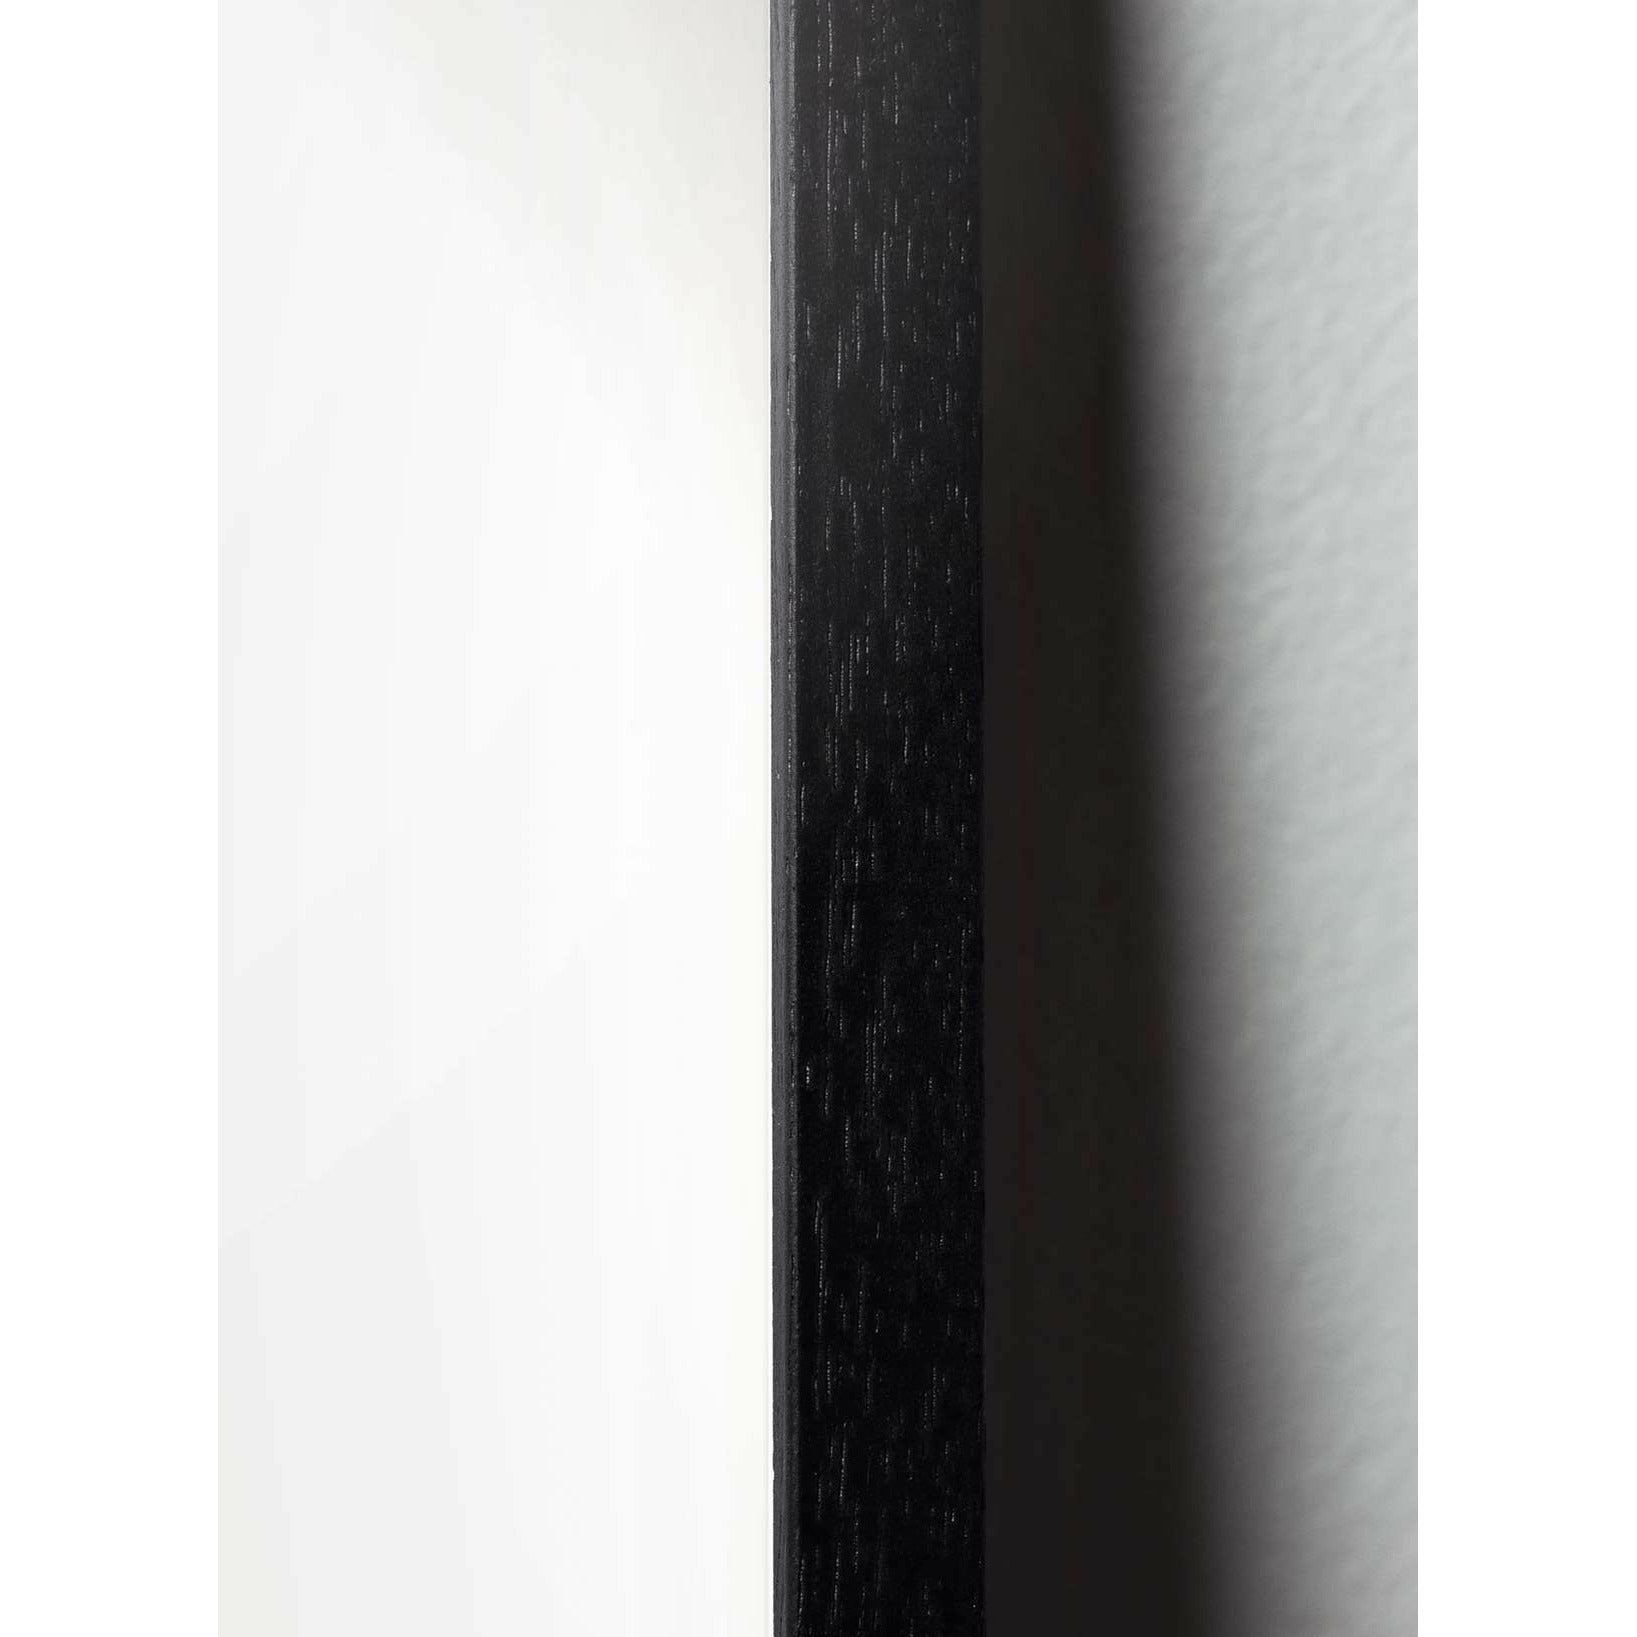 Pomysły Classic Plakat, rama w czarnym lakierowanym drewnie 30x40 cm, białe/białe tło